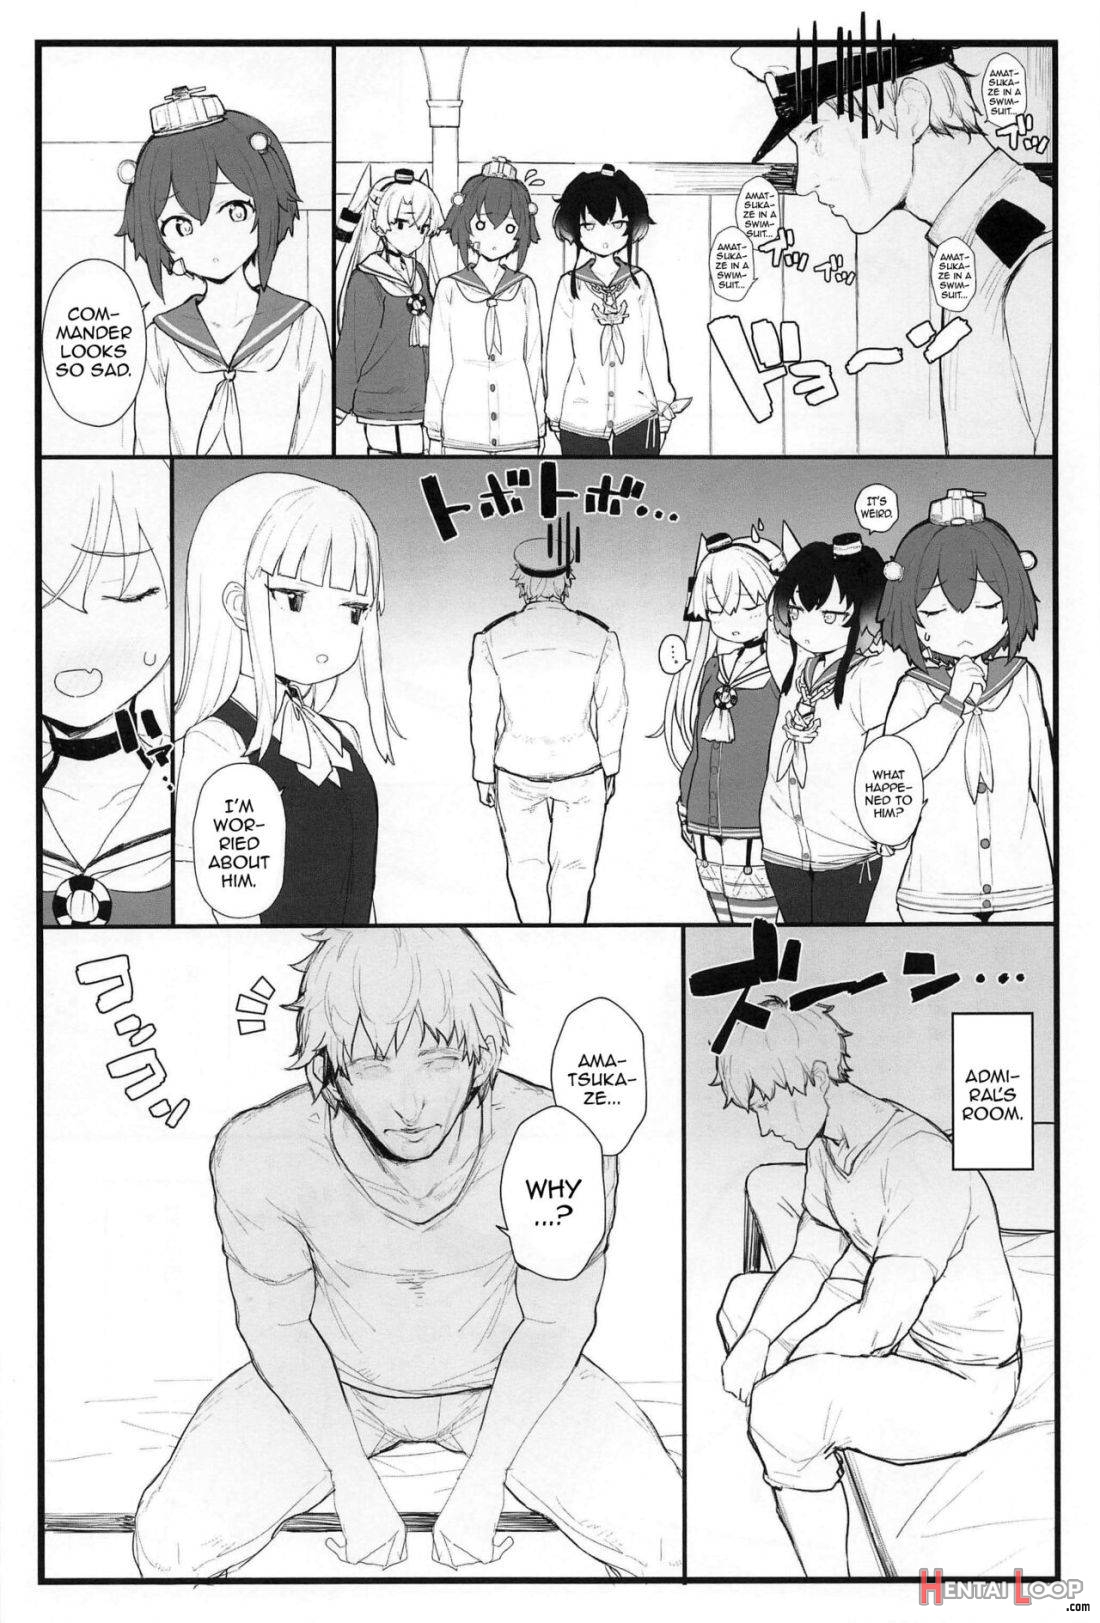 Ama Ama Amatsukaze page 3